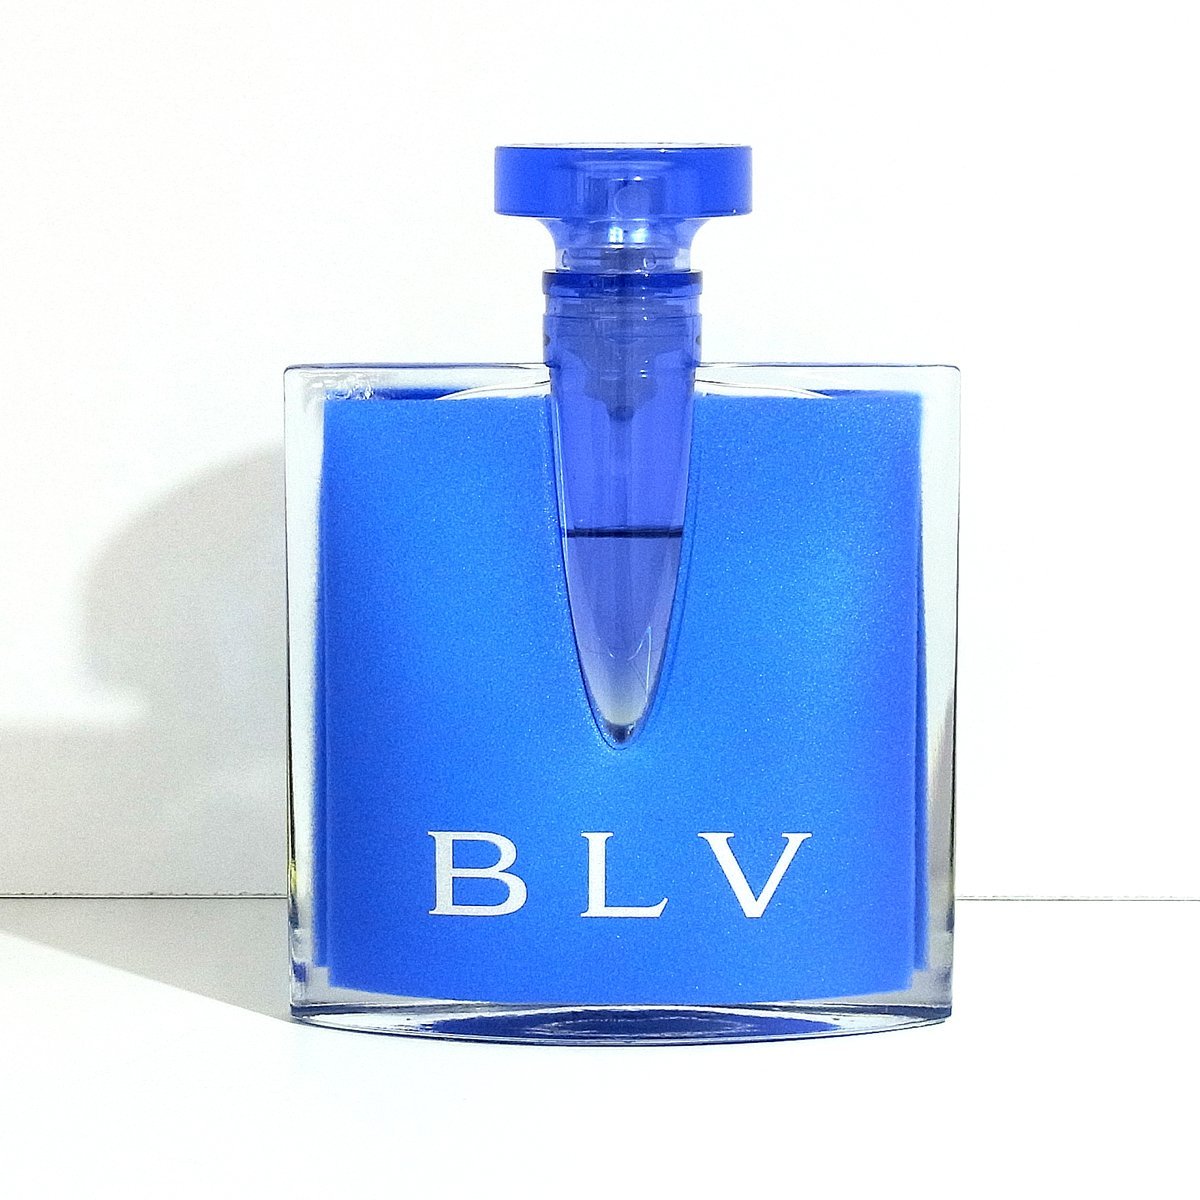 ブルガリ ブルー オードパルファム Ⅱ BLV 5ml ミニボトル